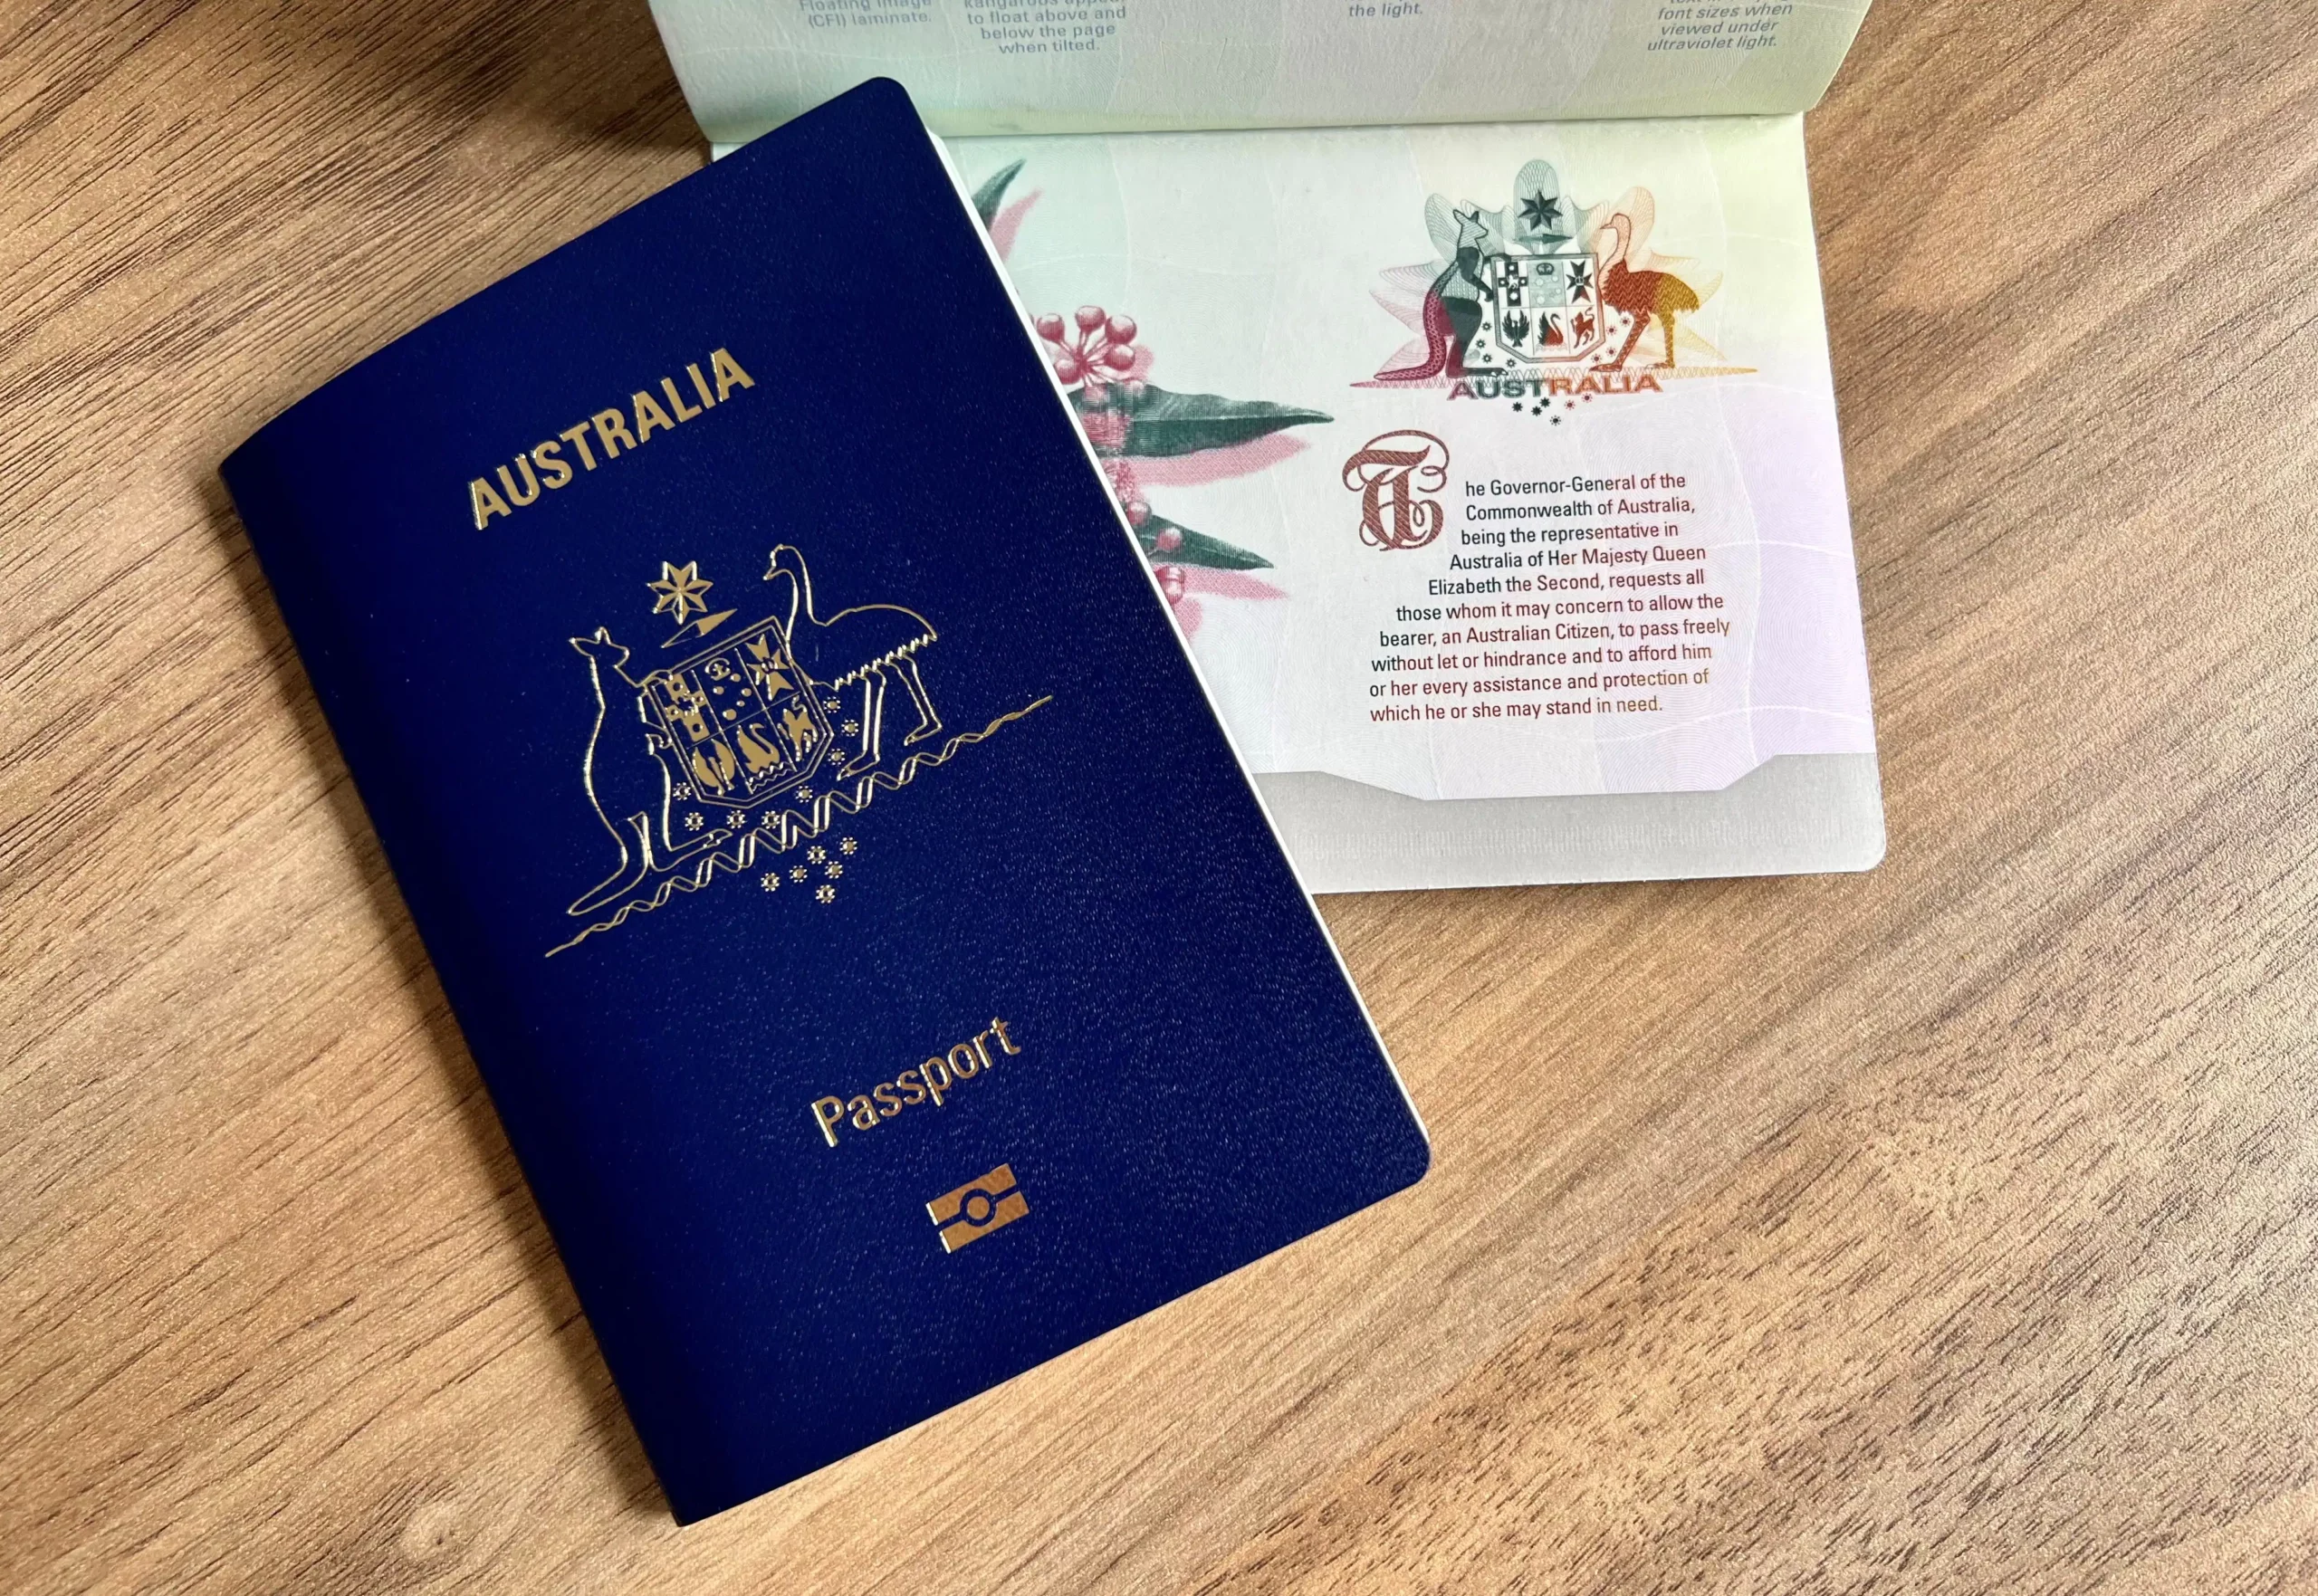 澳大利亚护照 库存图片. 图片 包括有 官员, 澳大利亚, 国界的, 纸张, 全球, 印花税, 澳洲, 移民 - 3068907